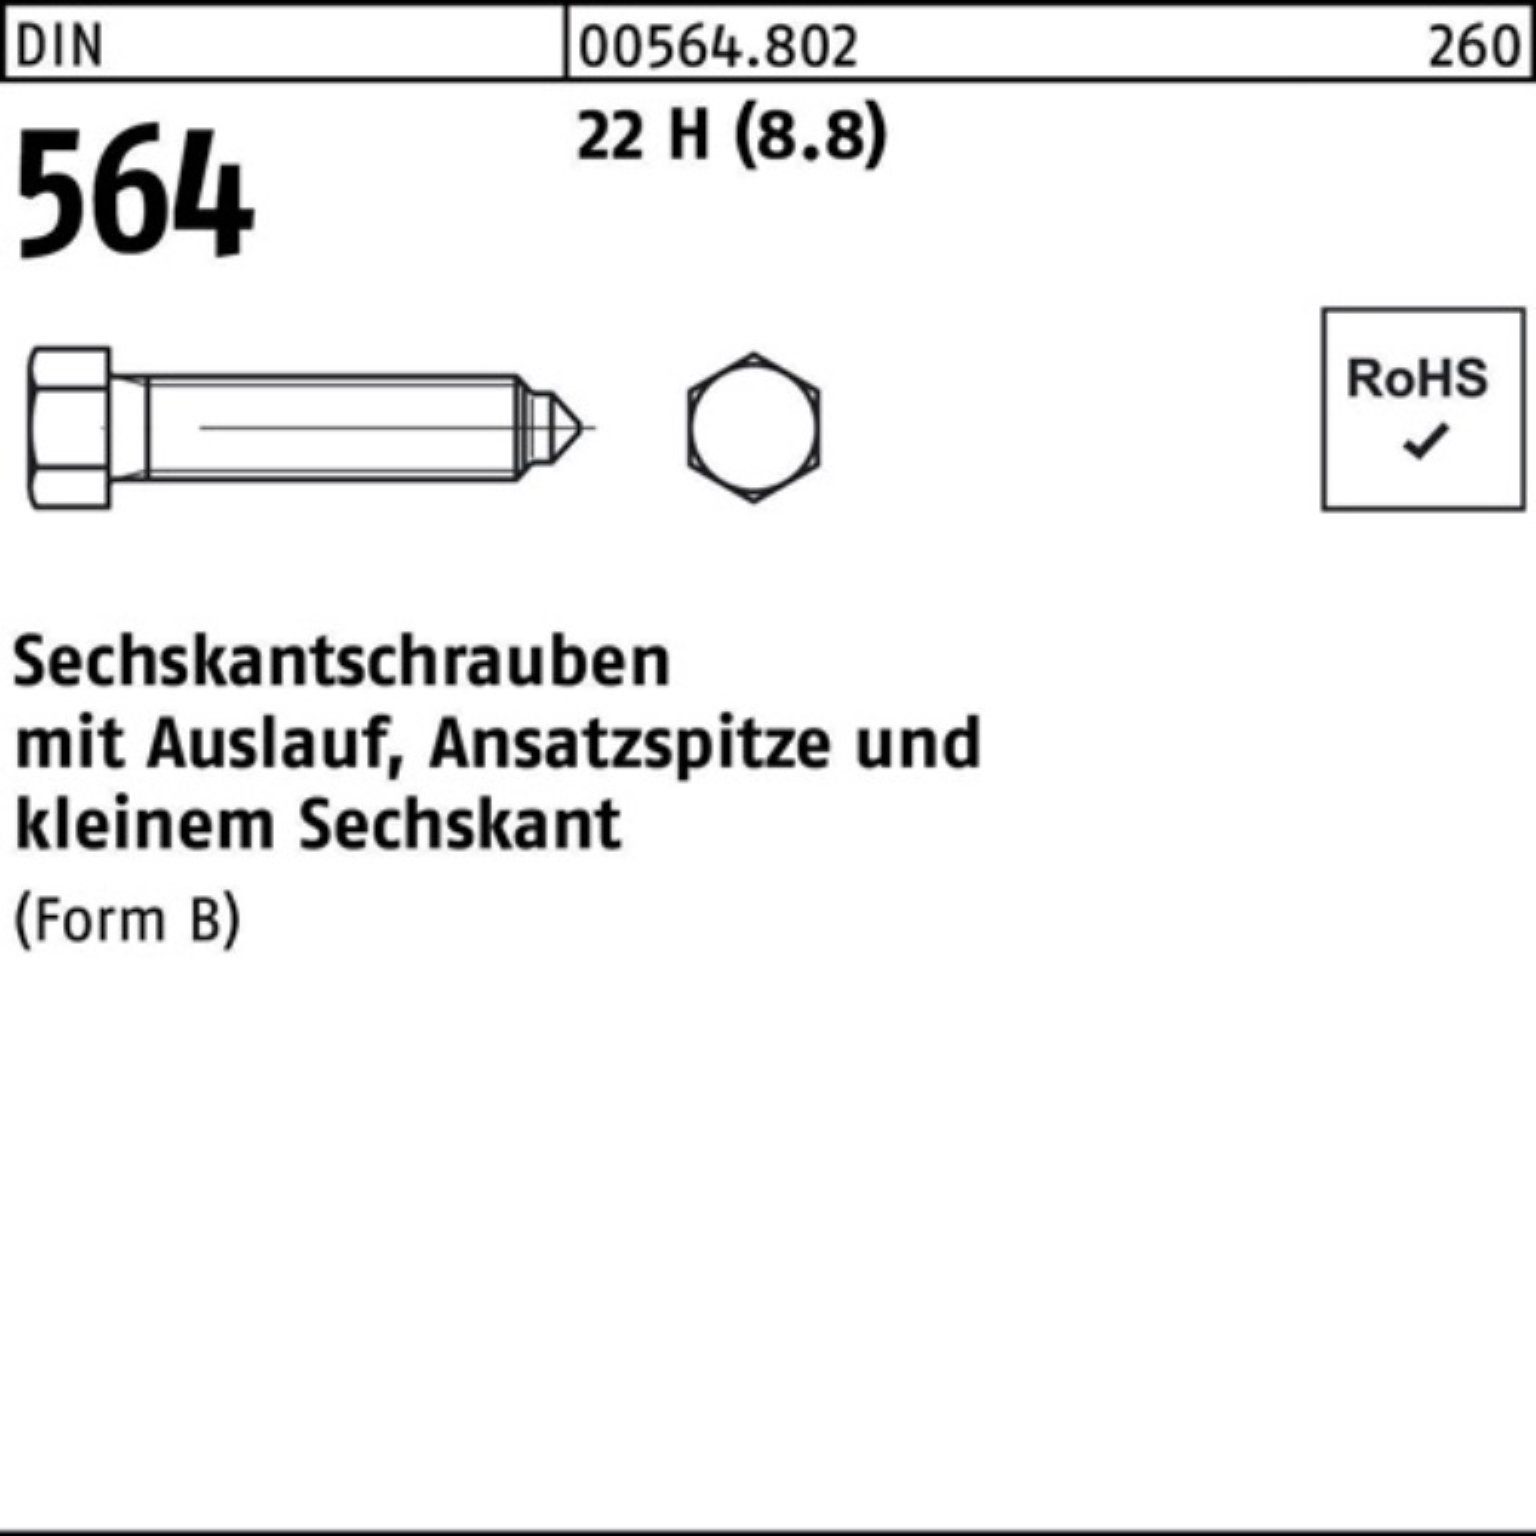 Reyher Sechskantschraube 100er Pack Sechskantschraube DIN 564 Ansatzspitze/Auslauf BM 12x 35 22